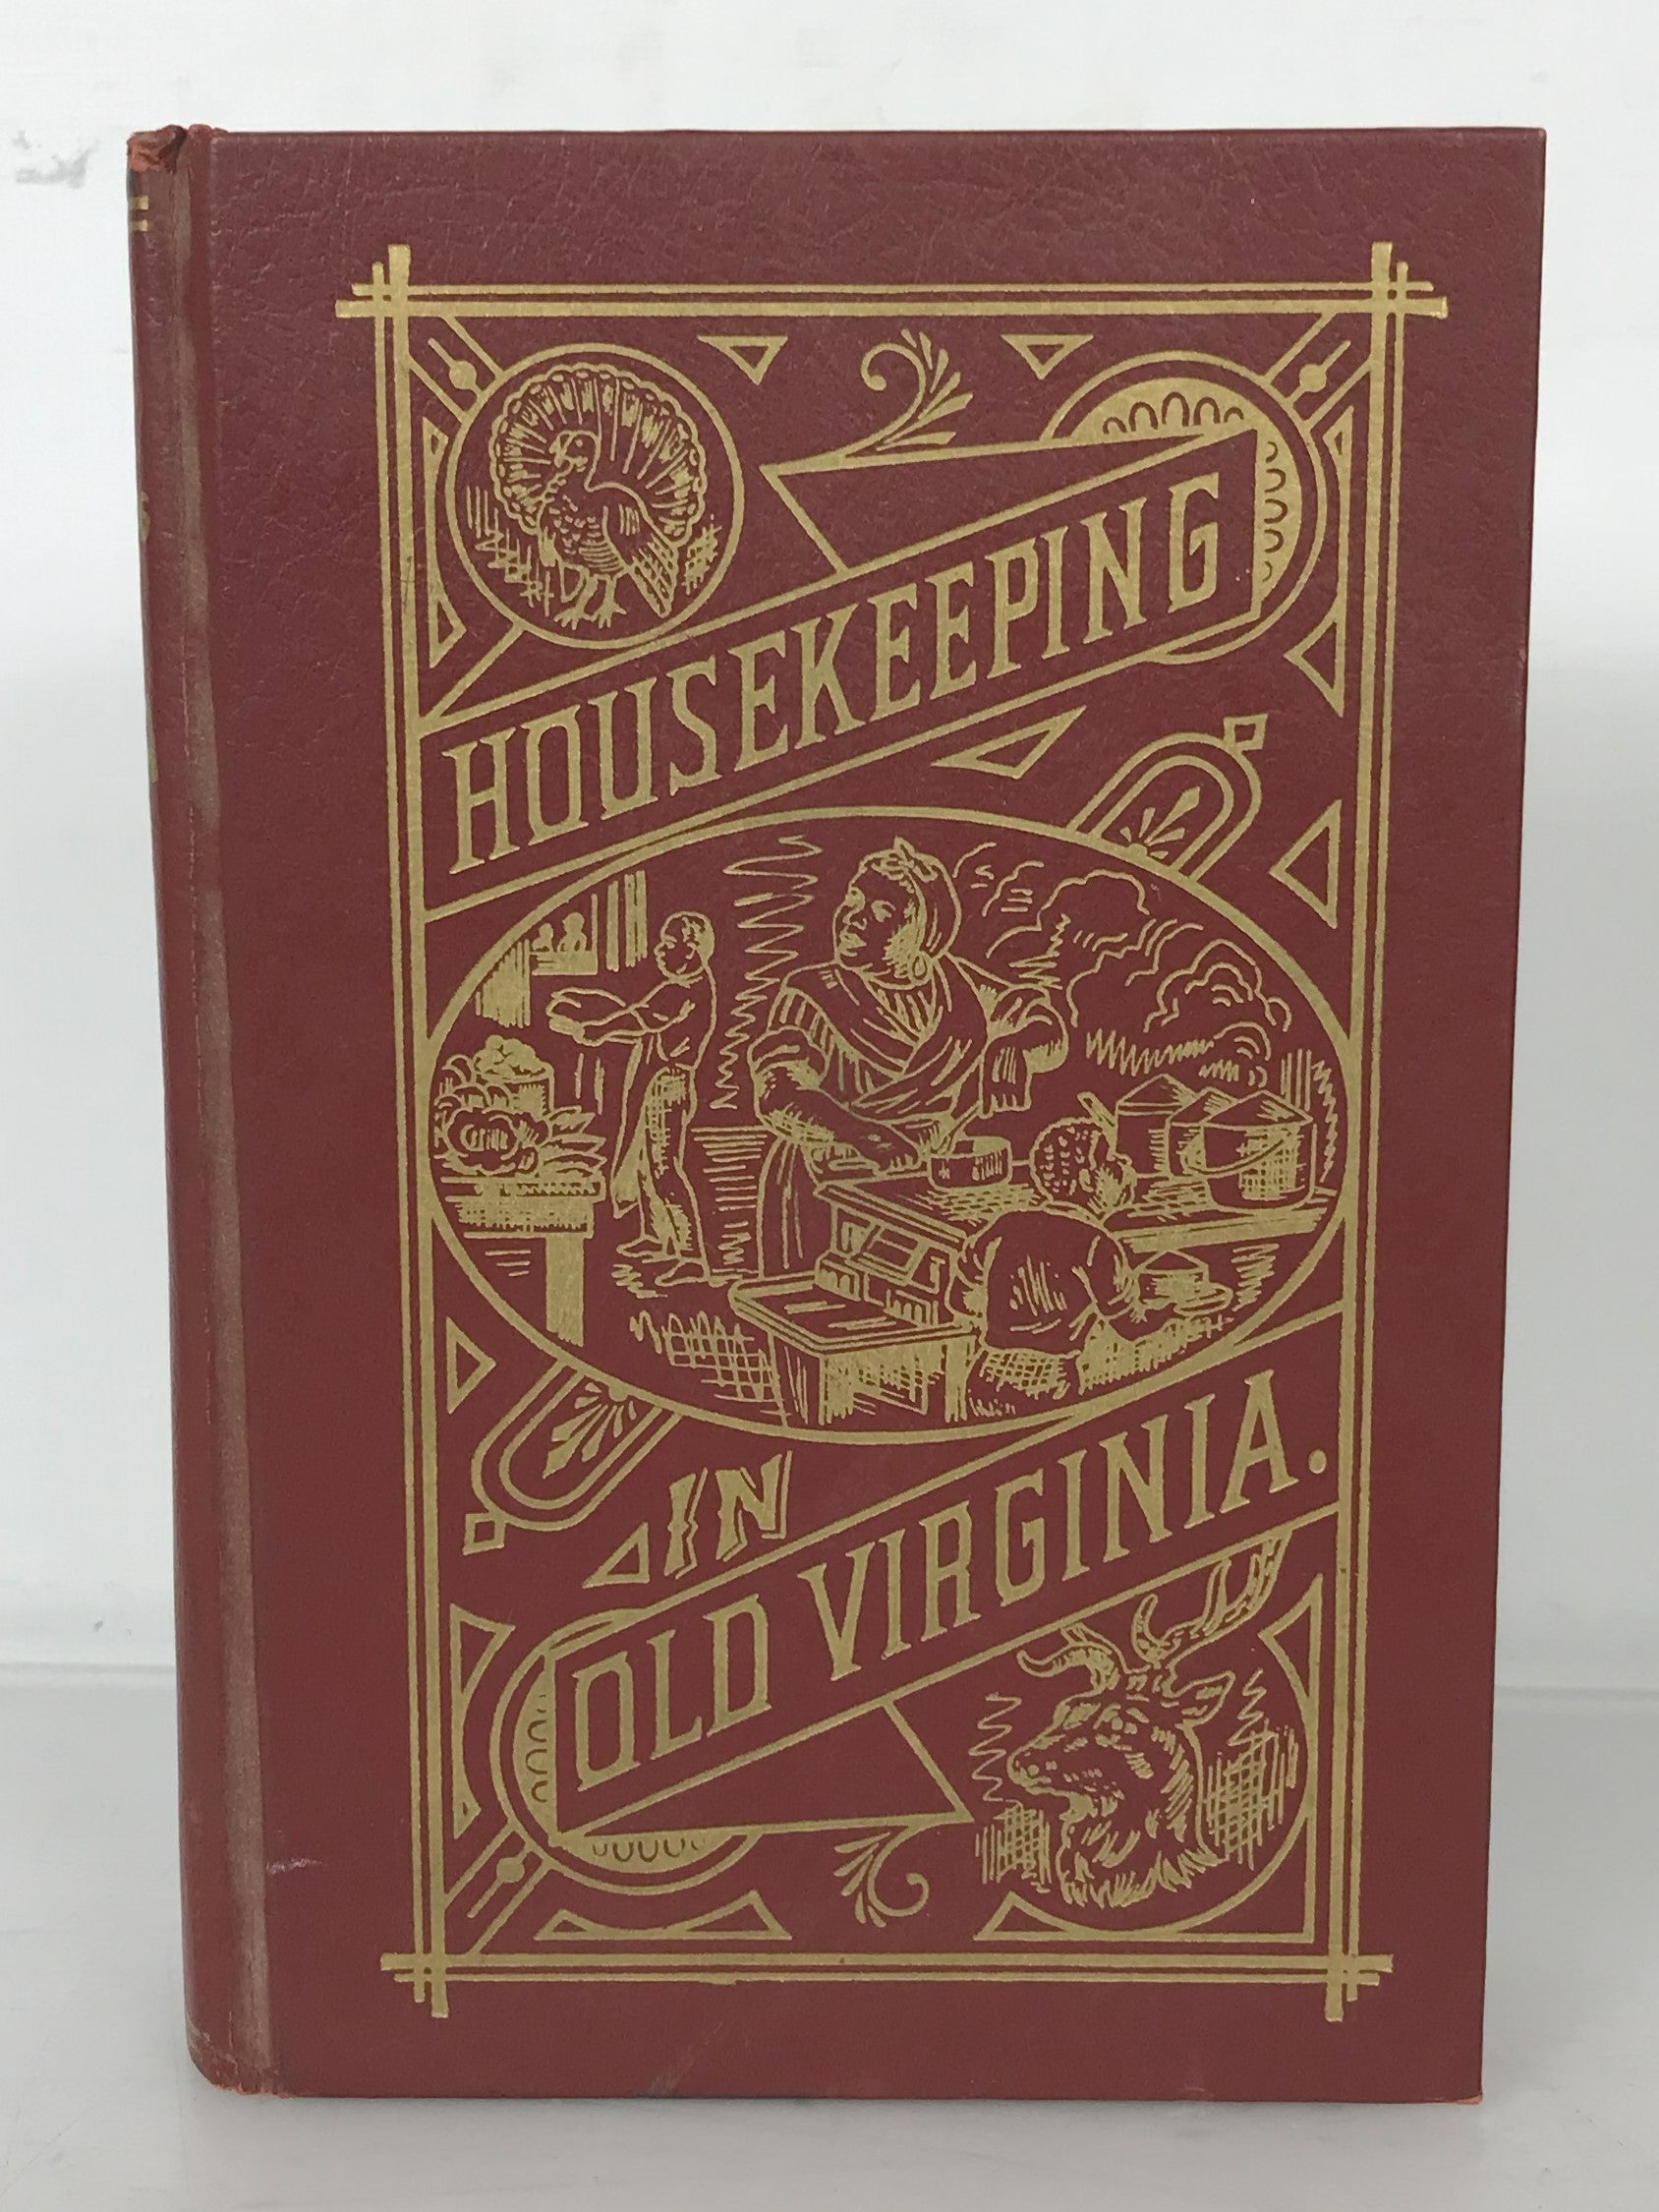 Housekeeping Old Virginia by MC Tyree 1965 Vintage Reprint